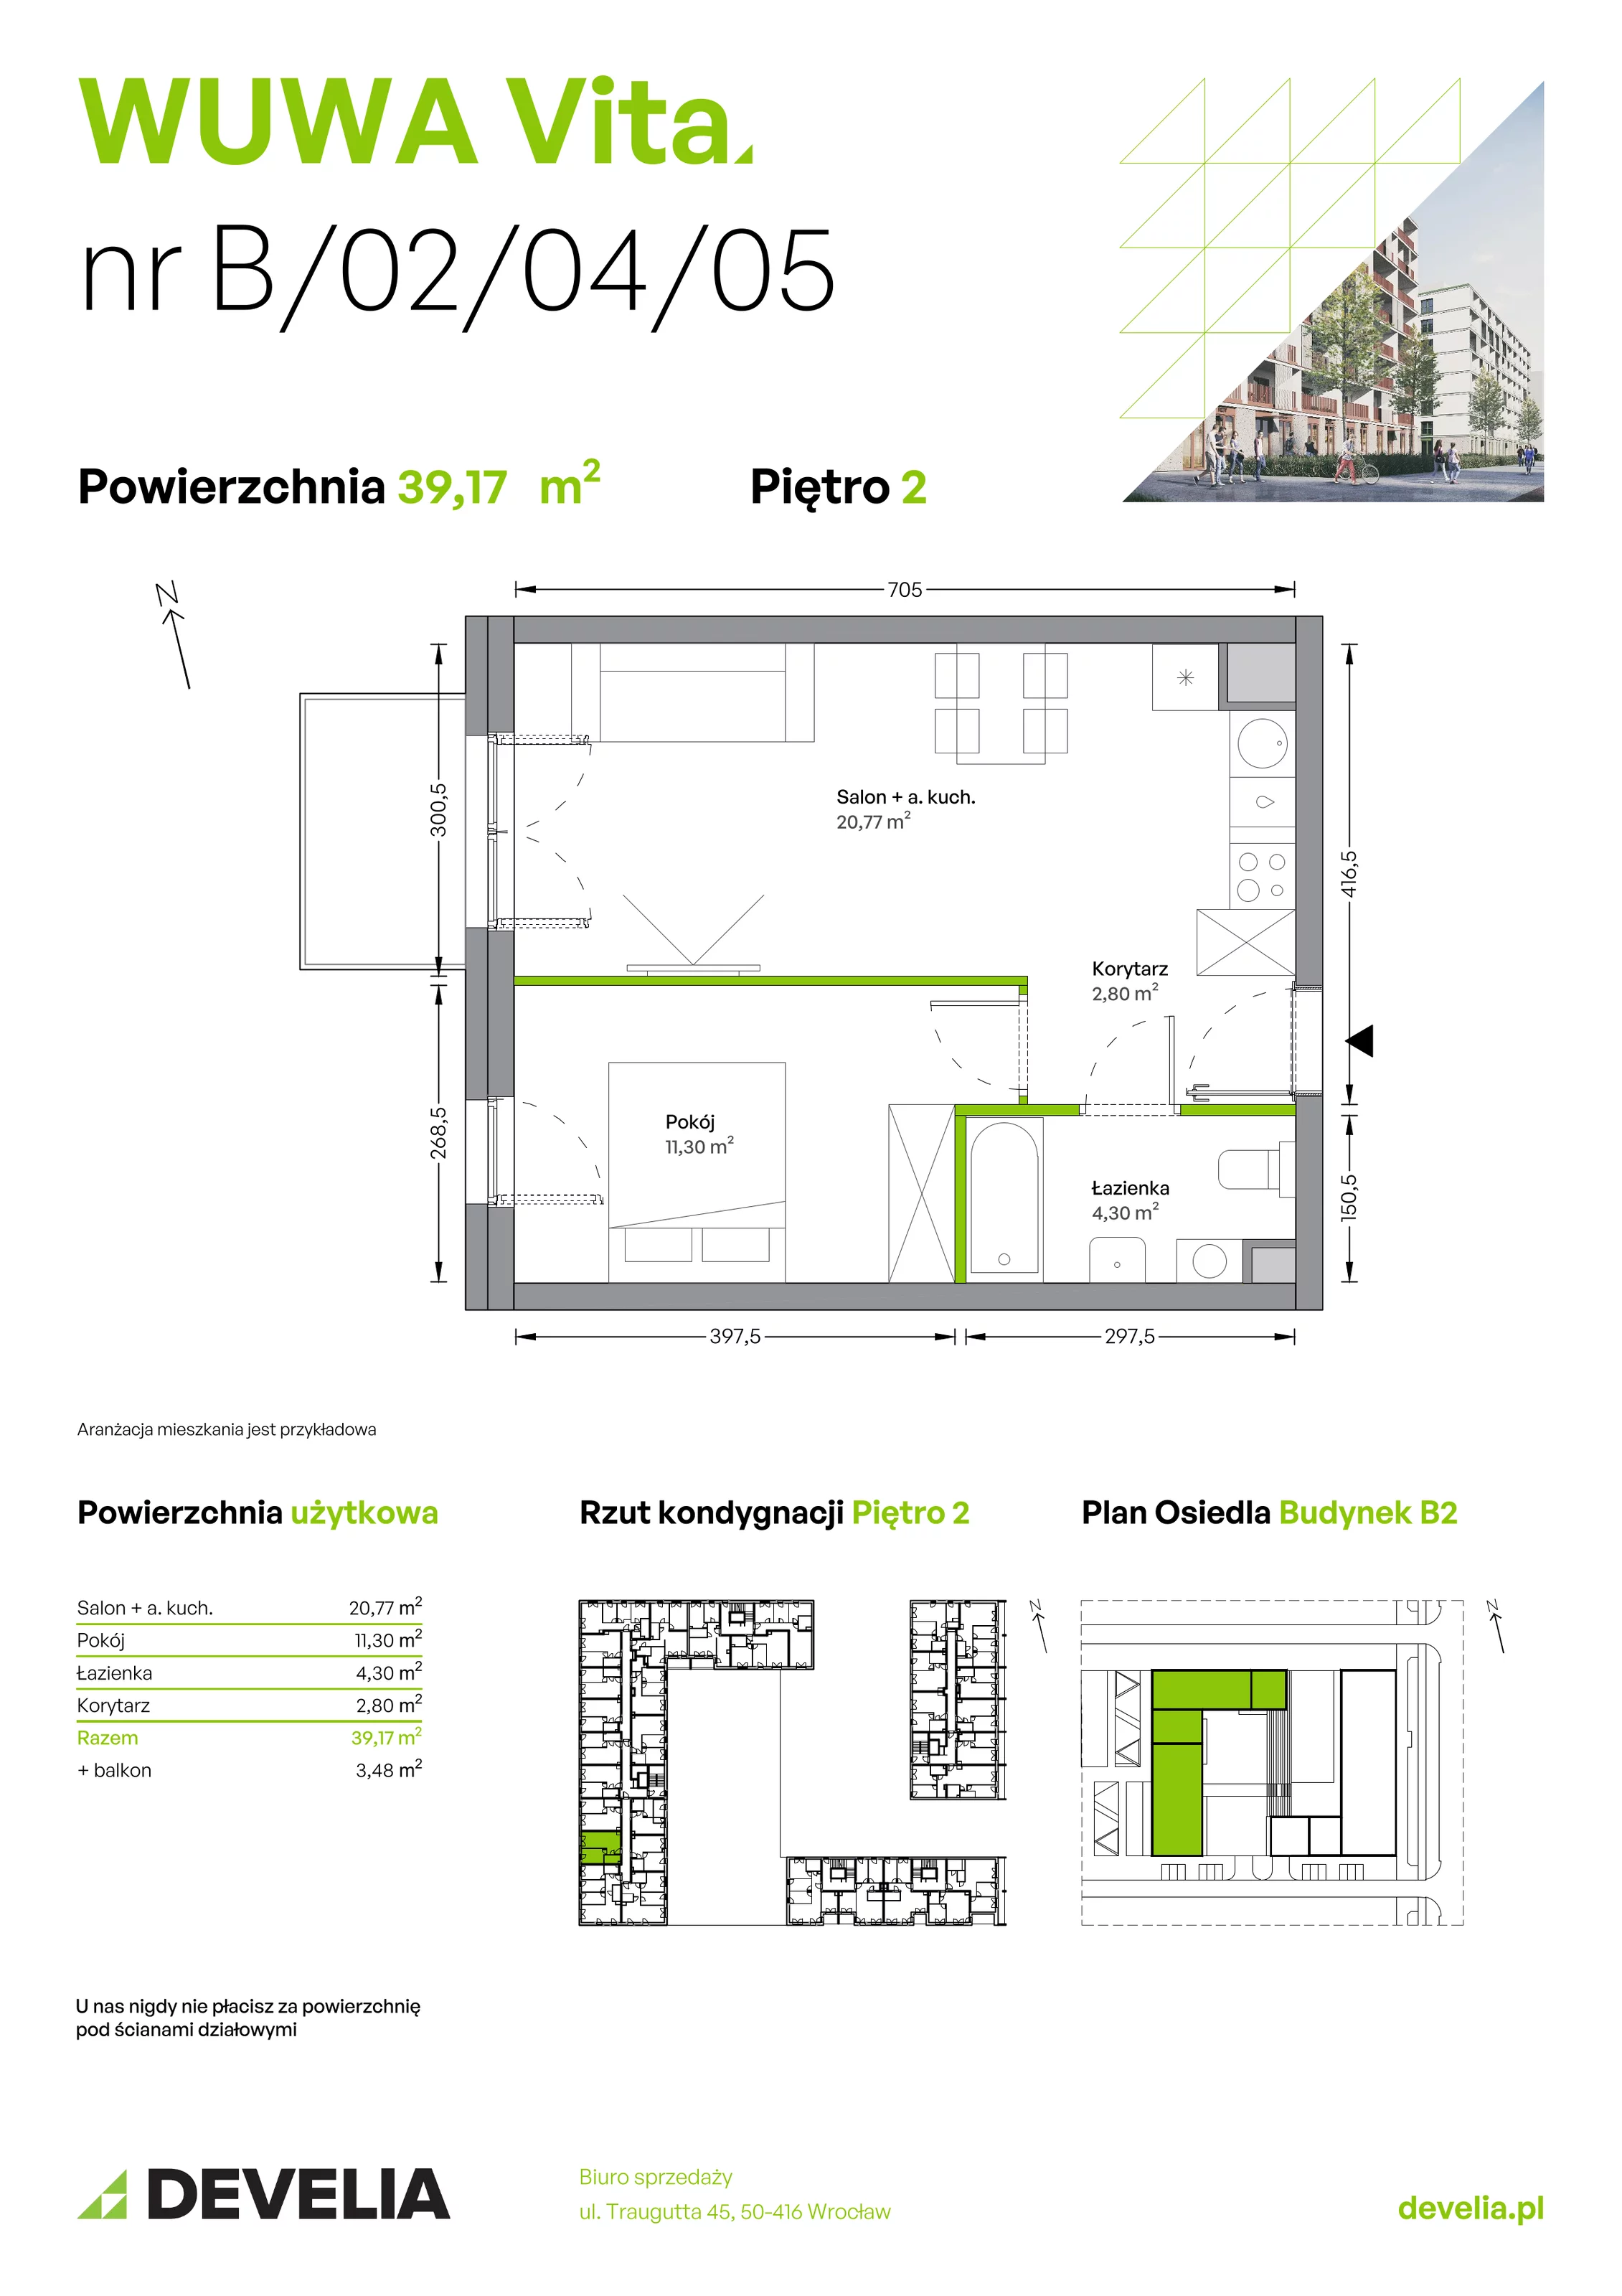 Mieszkanie 39,17 m², piętro 2, oferta nr B.02.04.05, WUWA Vita, Wrocław, Żerniki, Fabryczna, ul. Tadeusza Brzozy